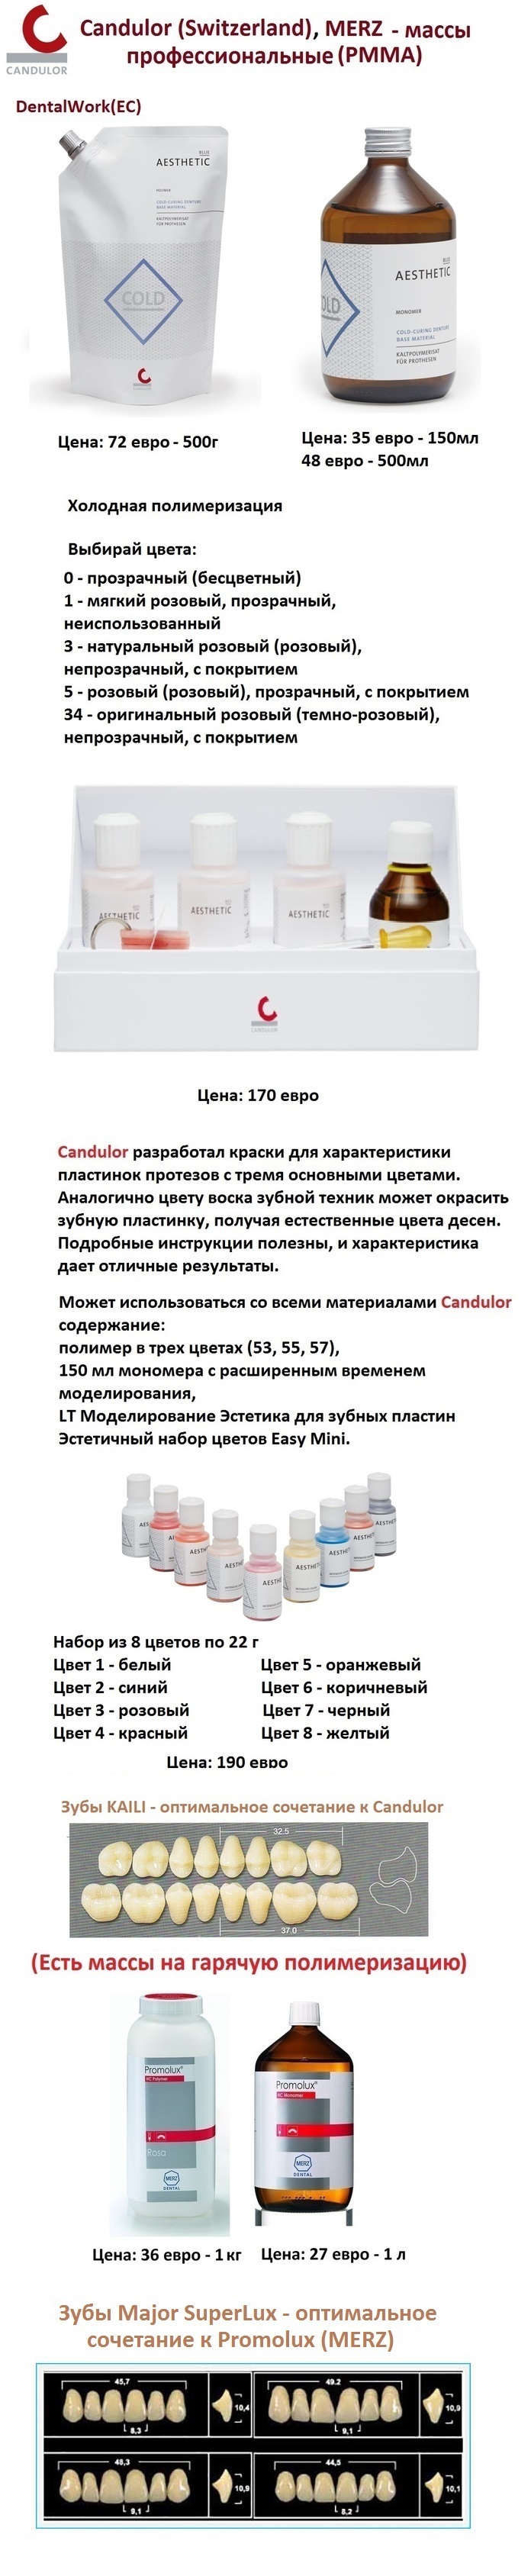 Candulor, MERZ, (PMMA) - массы профессиональные Zooble.com.ua